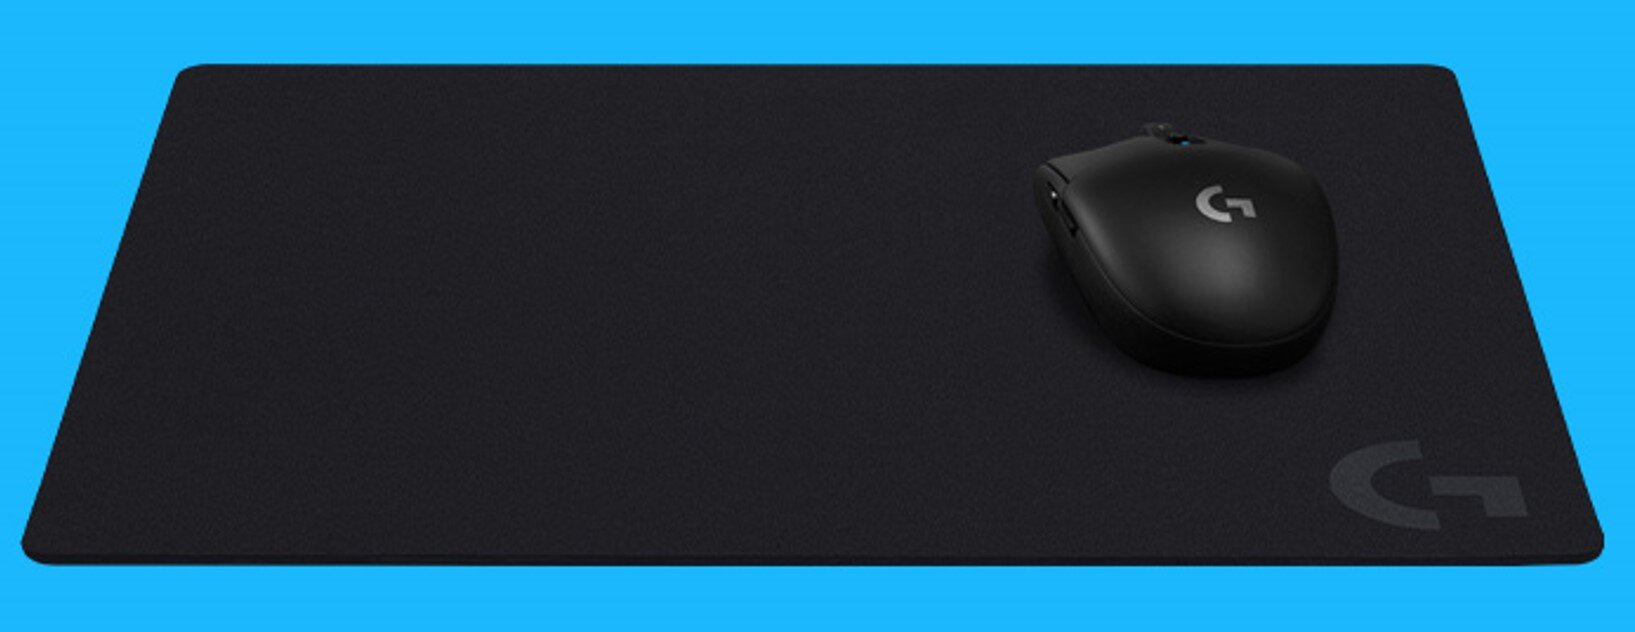 Podkładka LOGITECH G440 materiał tekstura  obszar biurko zwijanie jakość komfort dopasowanie stabilność gry gaming wodoodporna miękka antypoślizgowa guma